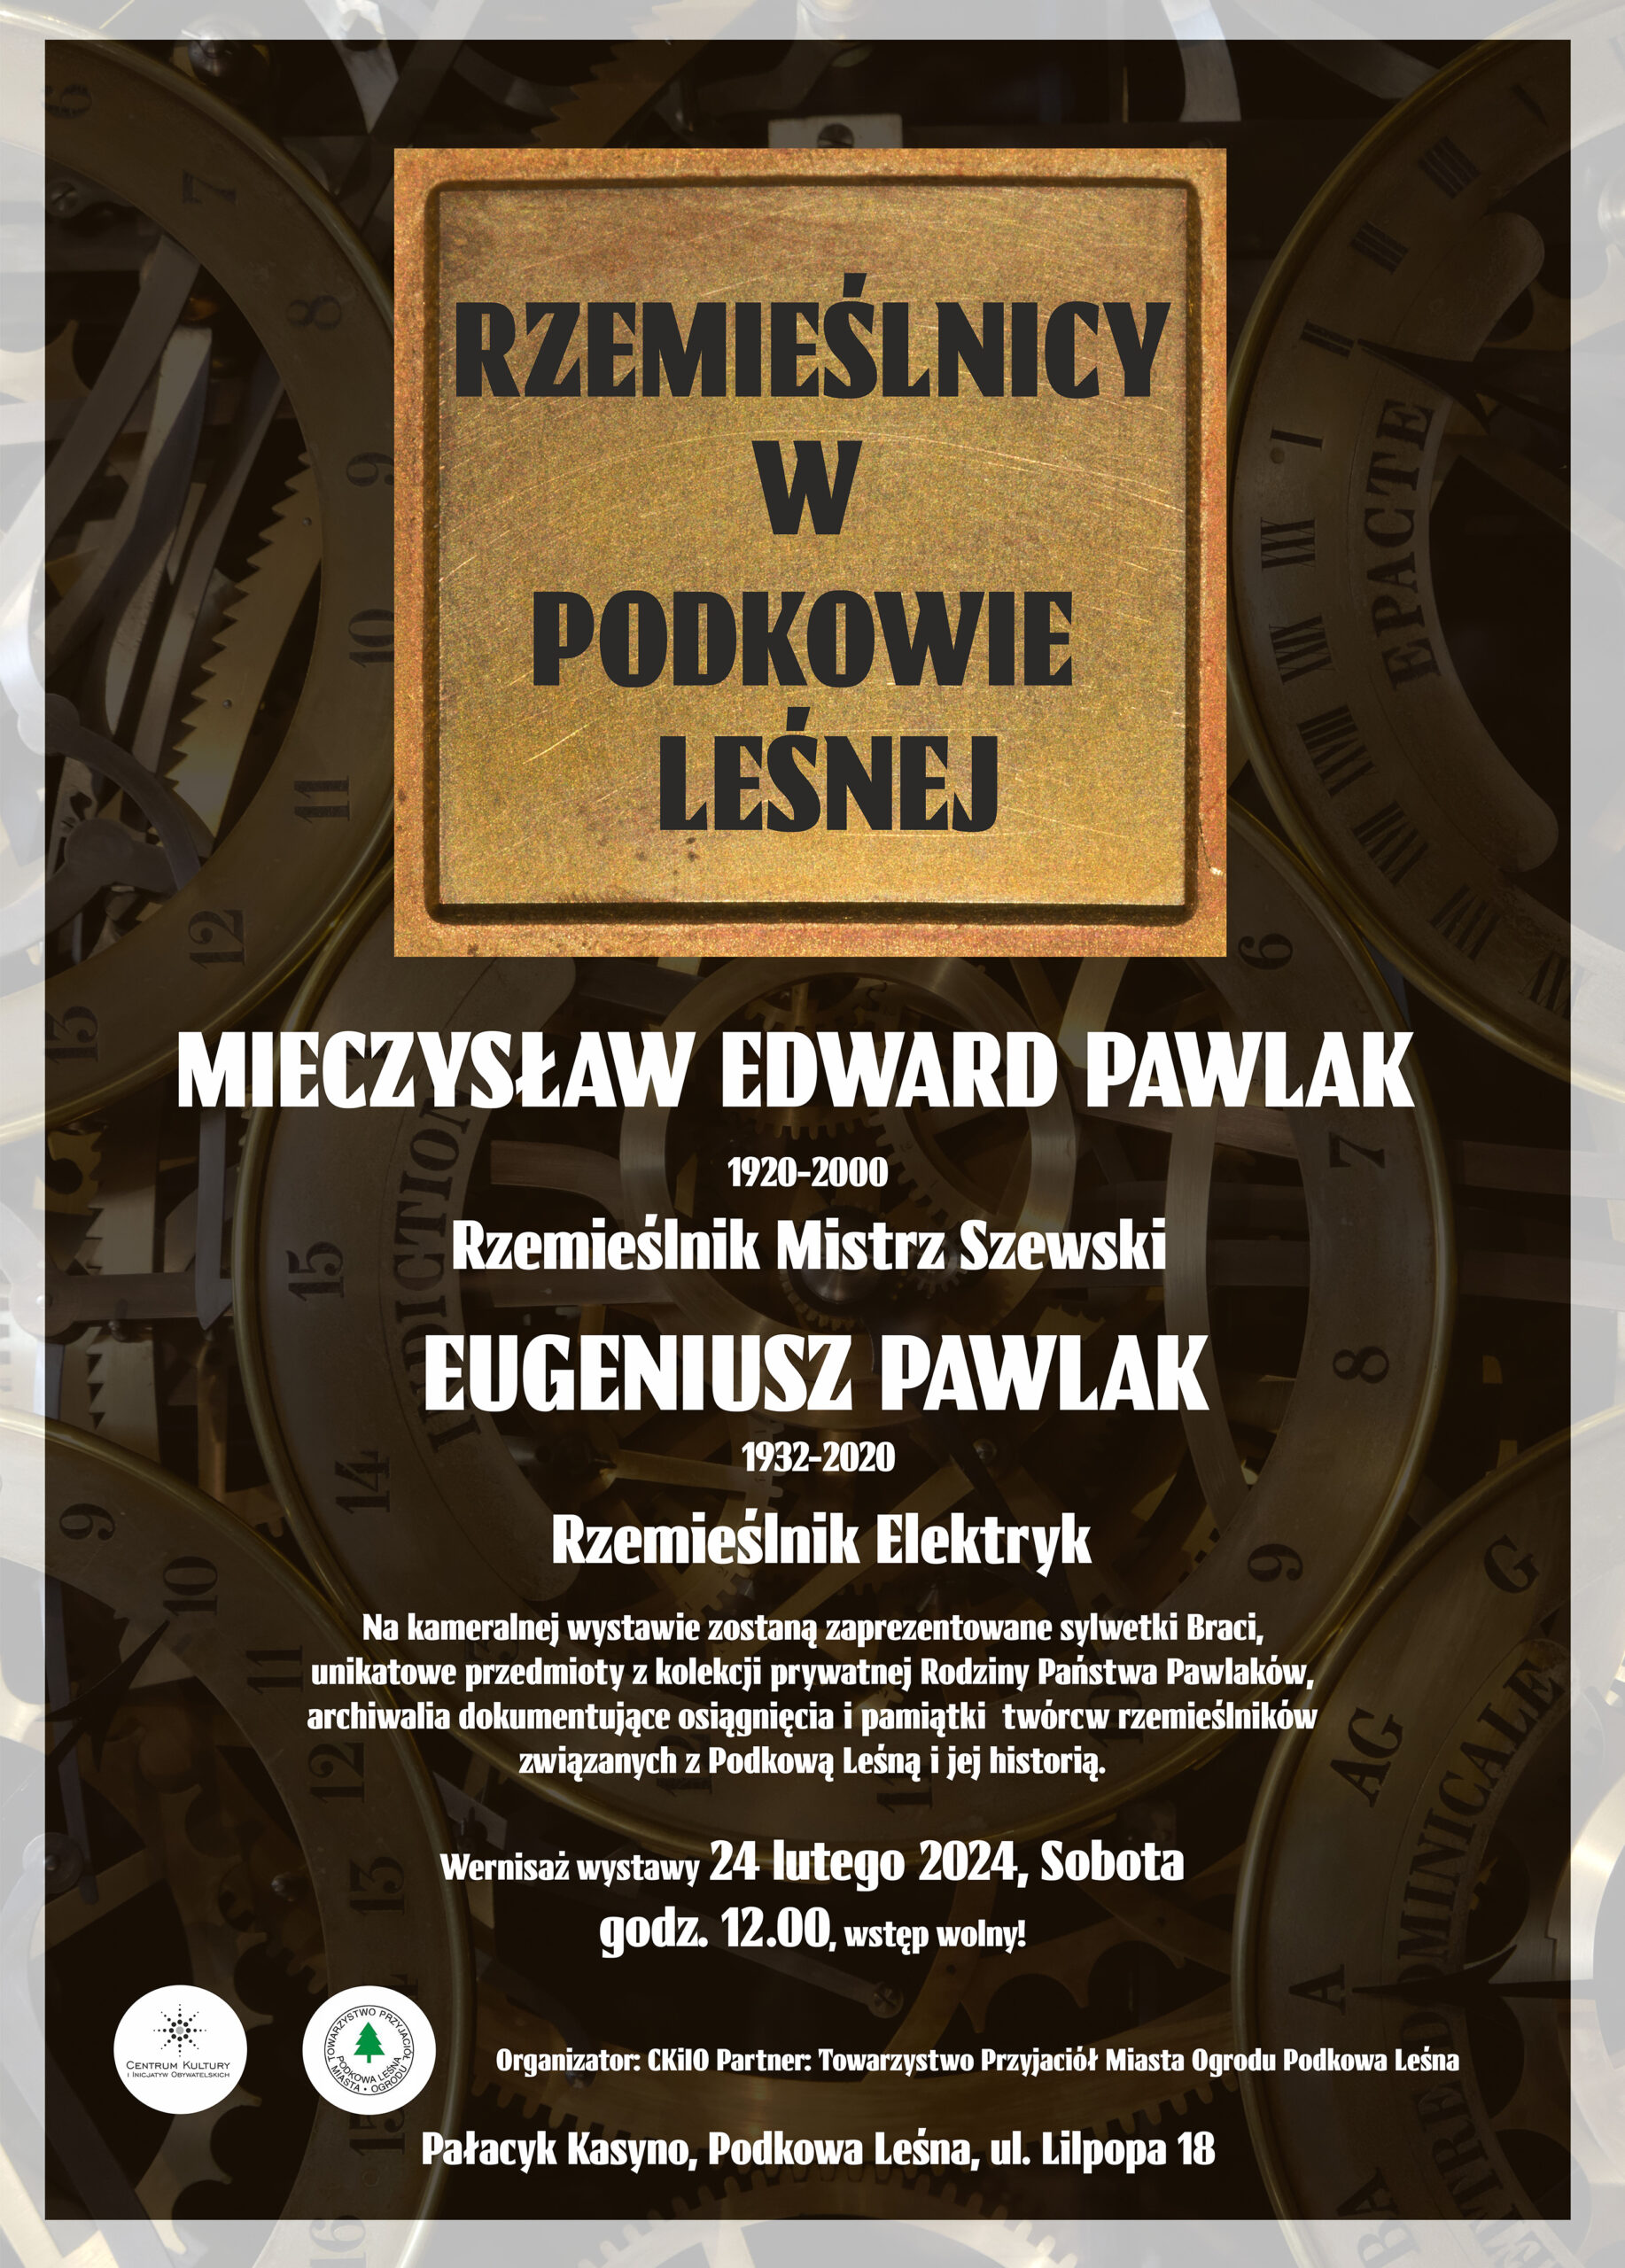 You are currently viewing Rzemieślnicy w Podkowie Leśnej